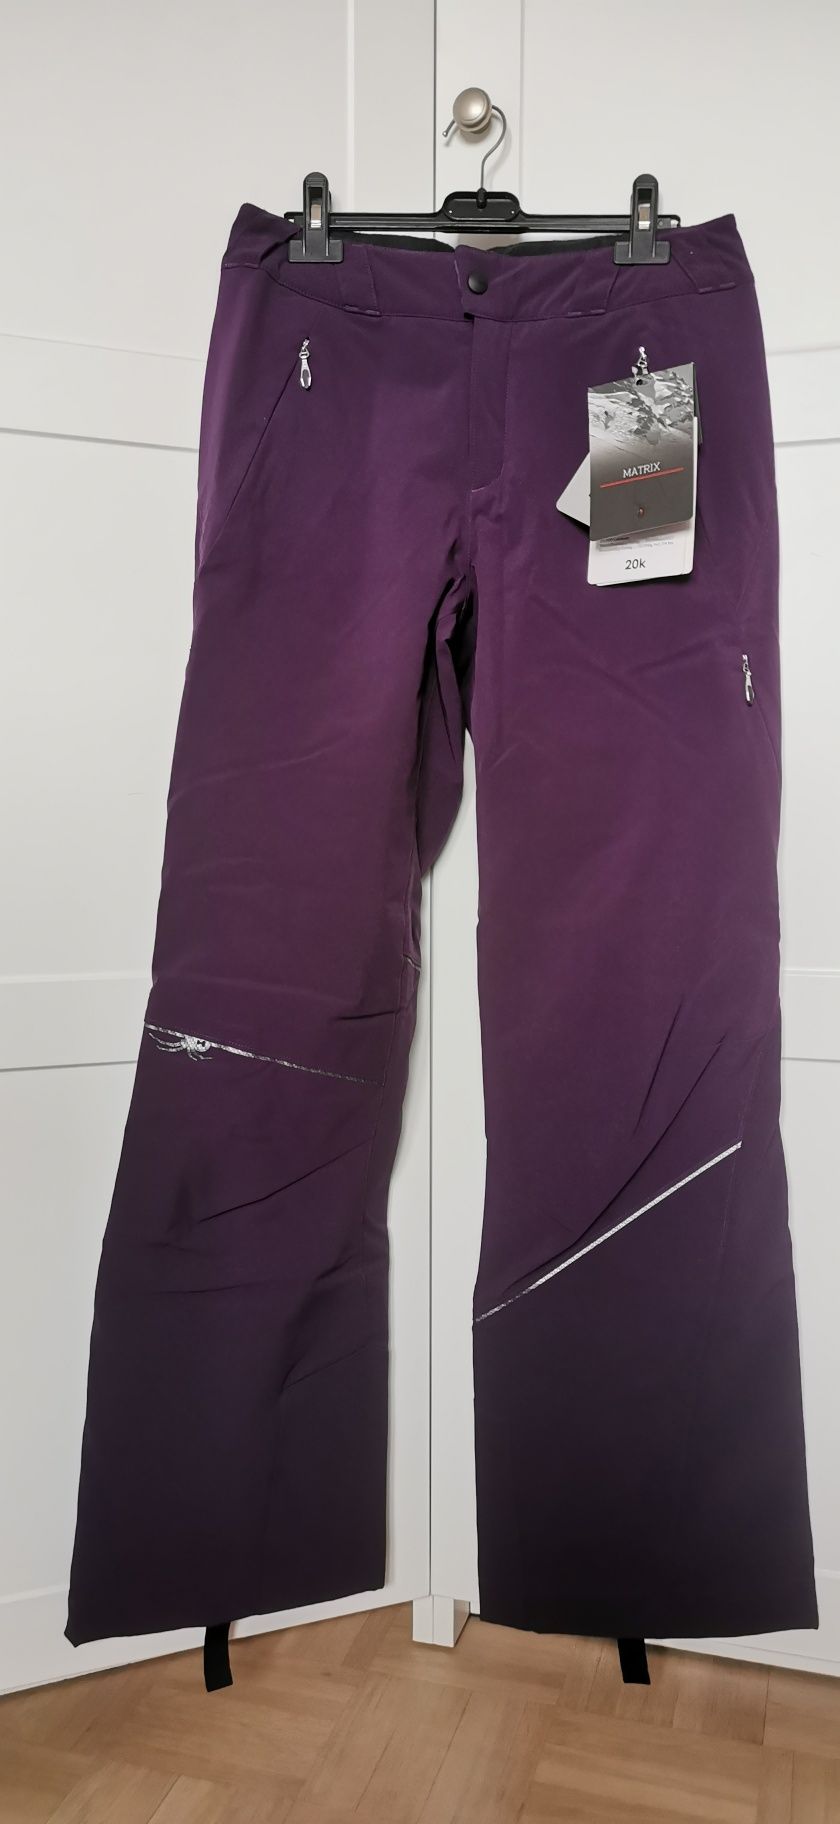 Spodnie narciarskie Spyder damskie śliwkowe fioletowe 36 S nowe